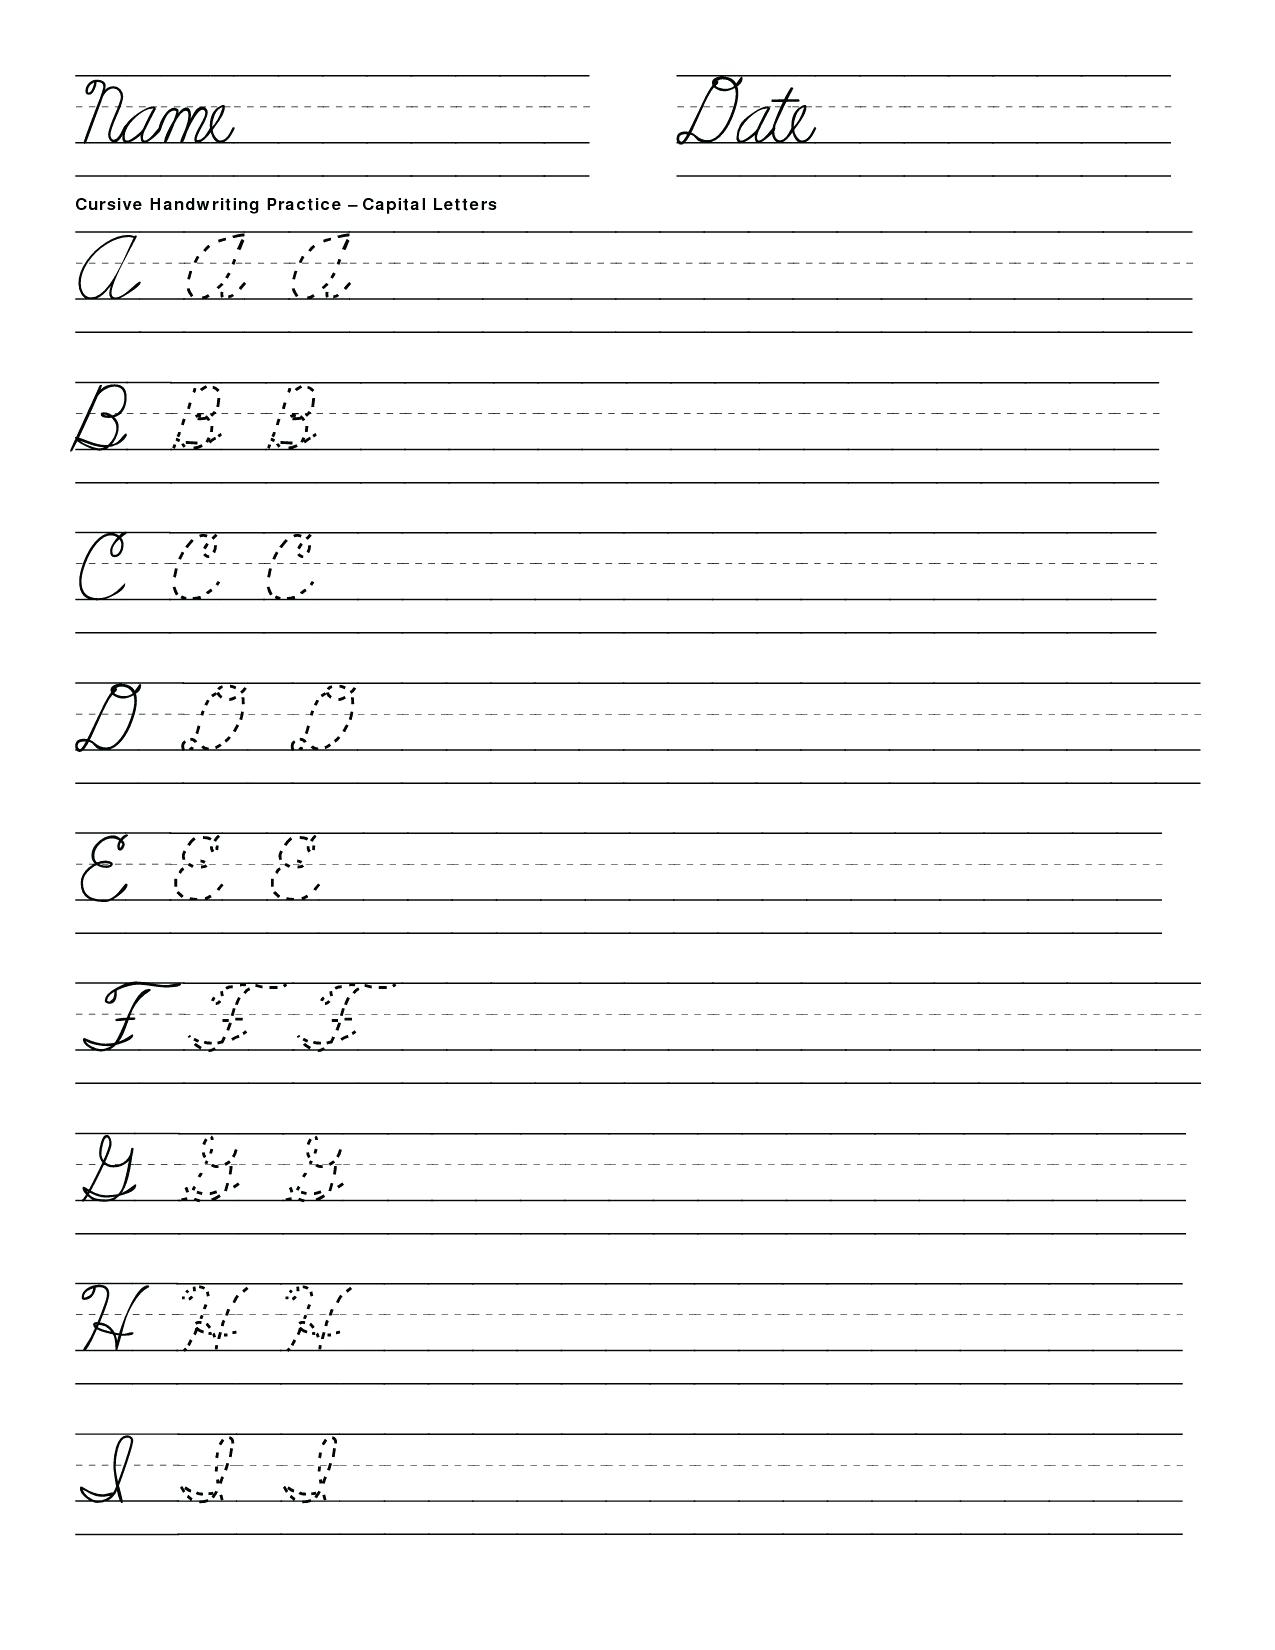 Cursive Letters Worksheet Free 8 Cursive Letters Worksheet for Cursive Capital Letters Tracing